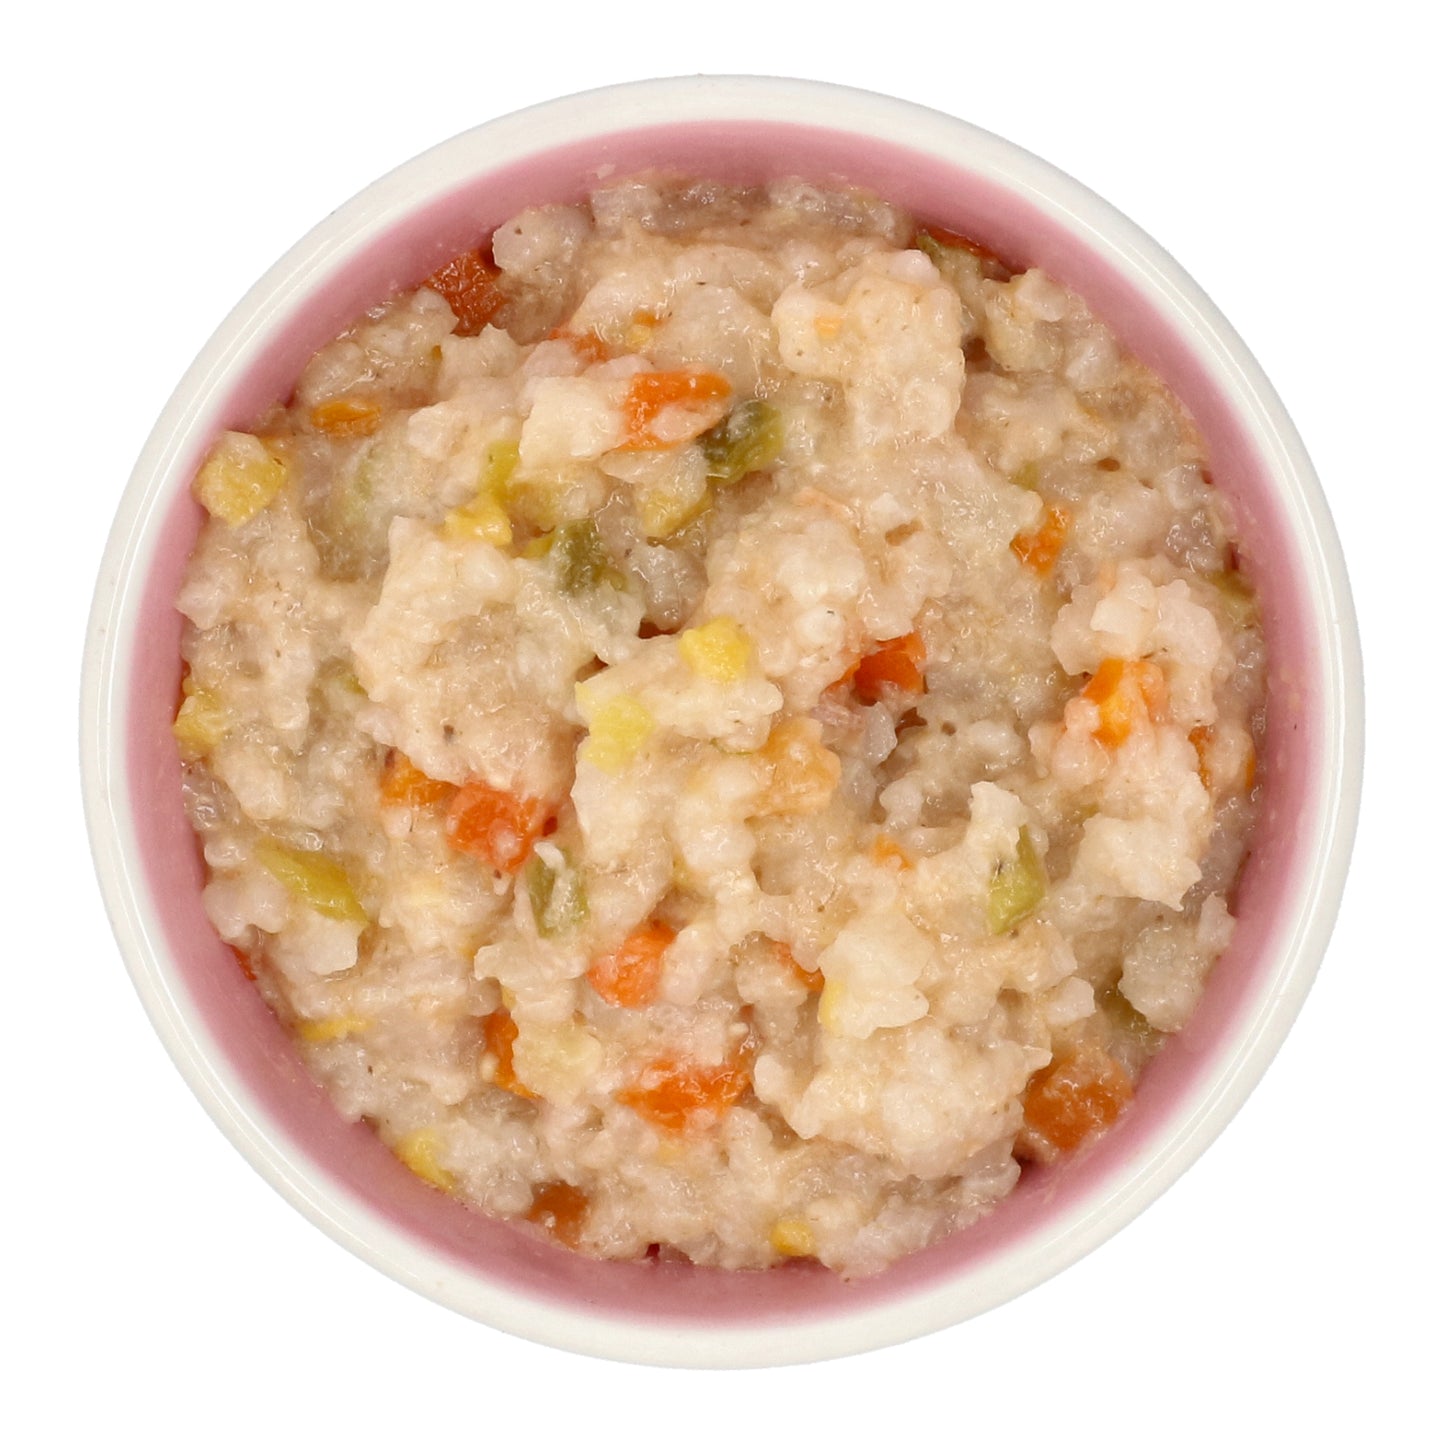 Eusik  - Baby Rice Porridge (Salmon & Vegetables) 145g, 10mths+